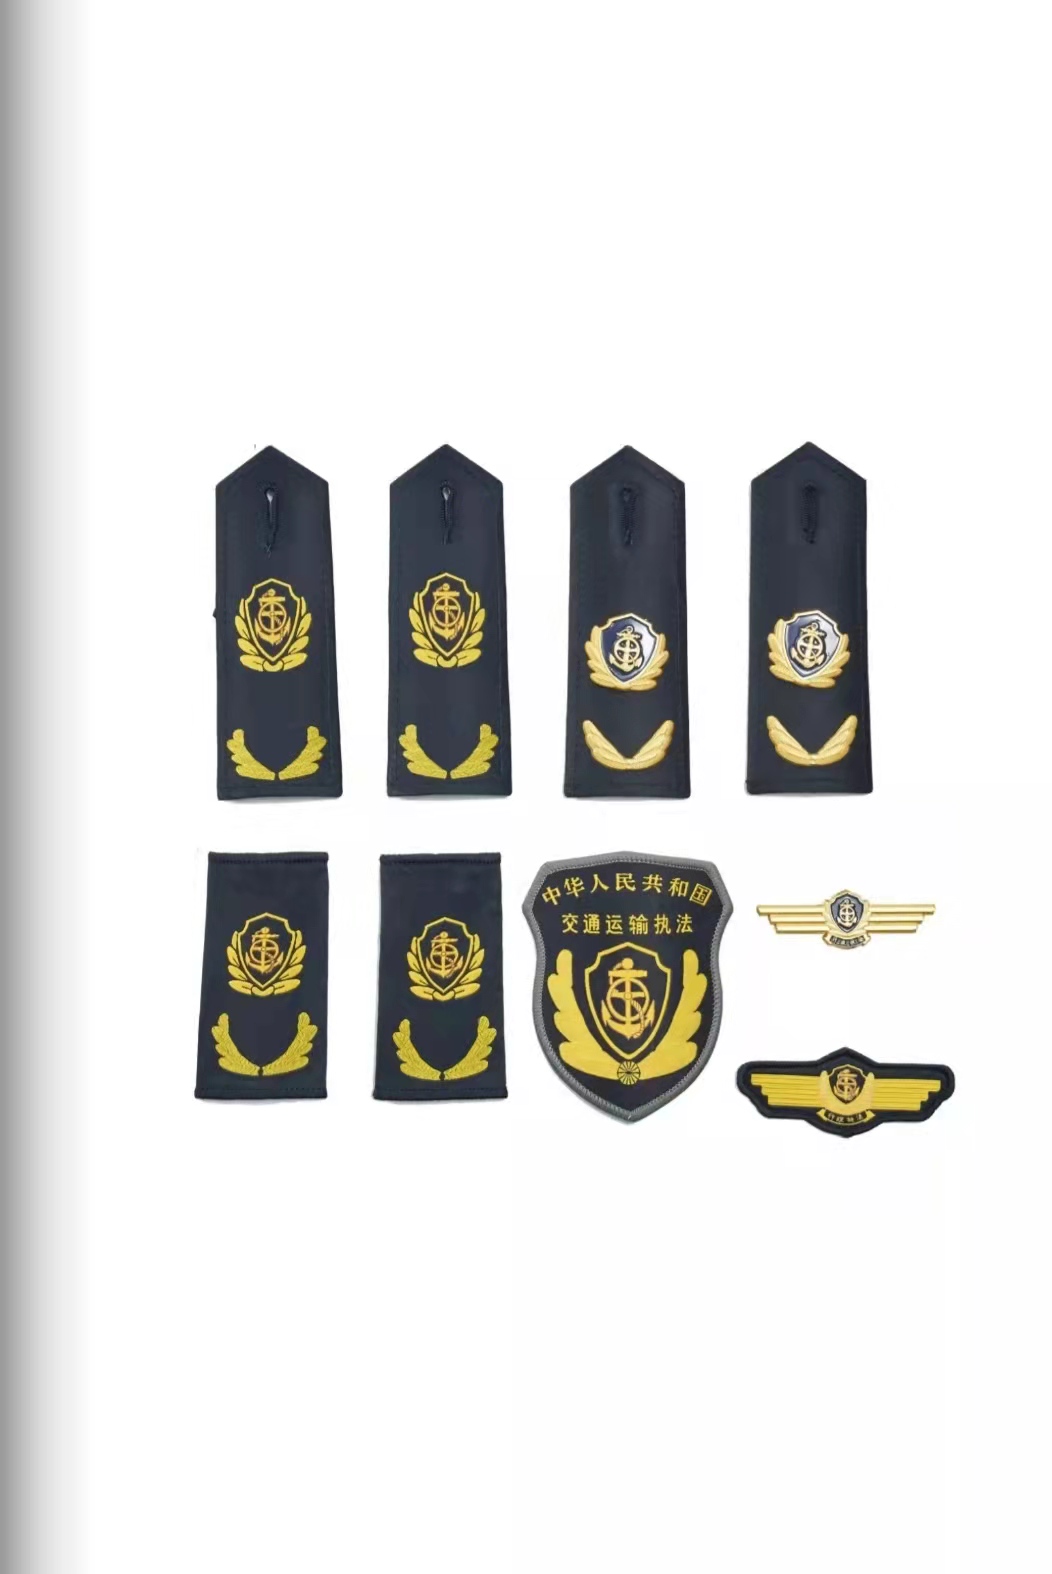 铁岭六部门统一交通运输执法服装标志